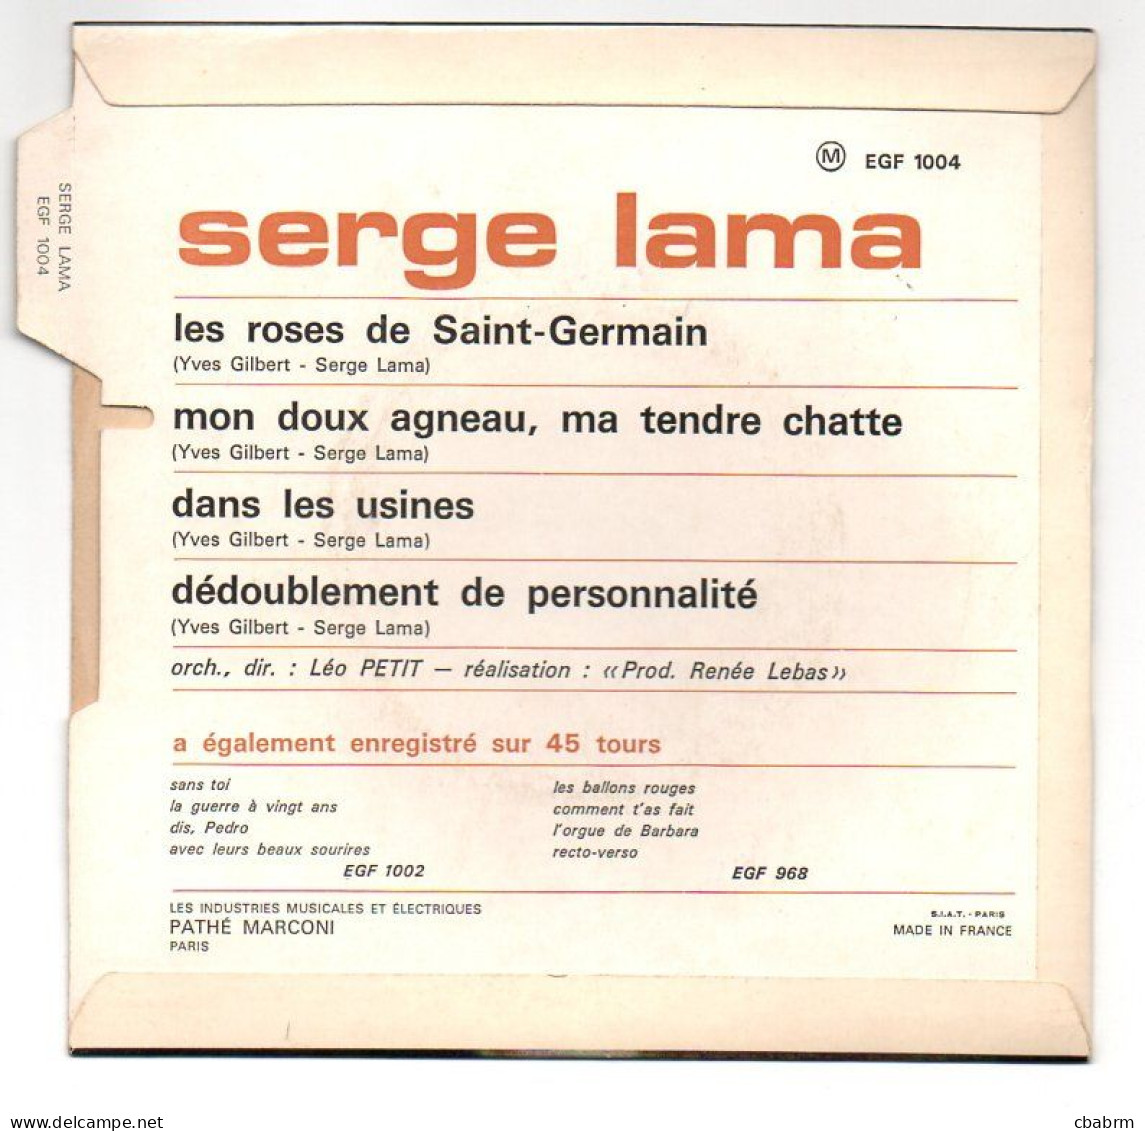 EP 45 TOURS SERGE LAMA LES ROSES DE SAINT-GERMAIN 1967 FRANCE EGF 1004 LANGUETTE - Autres - Musique Française